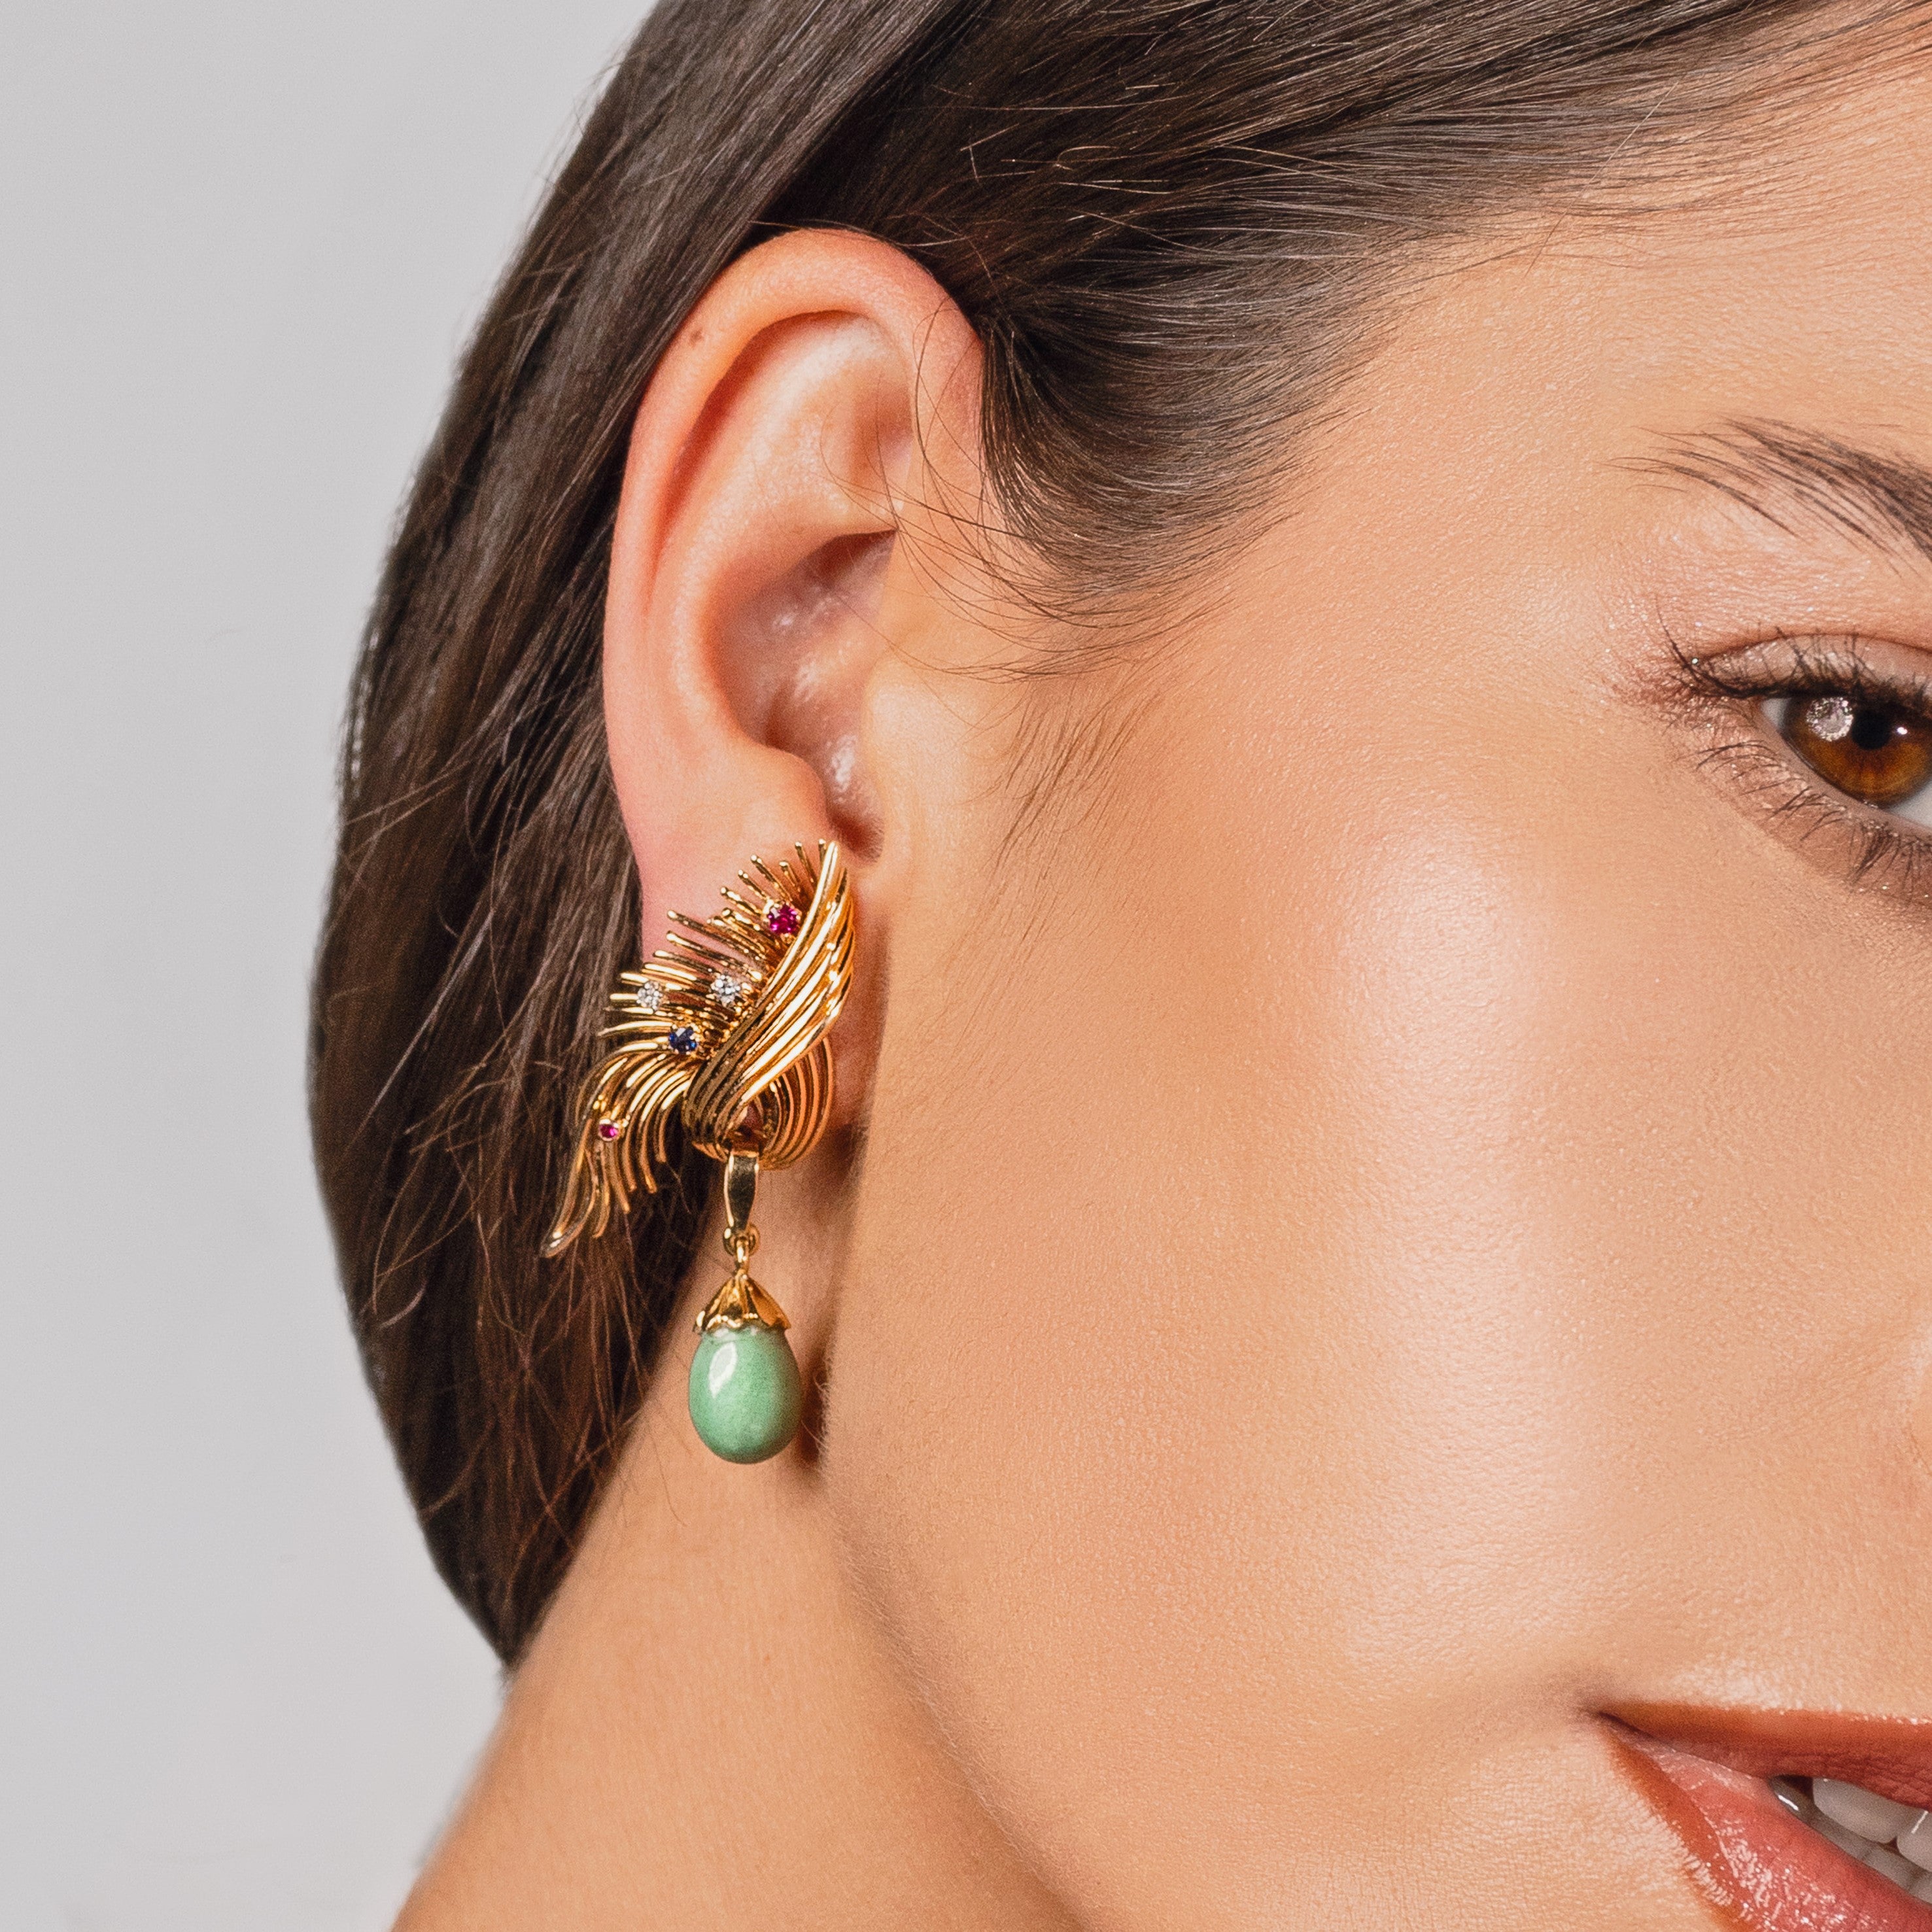 Vintage turquoise dangle earrings worn on a woman’s ear.